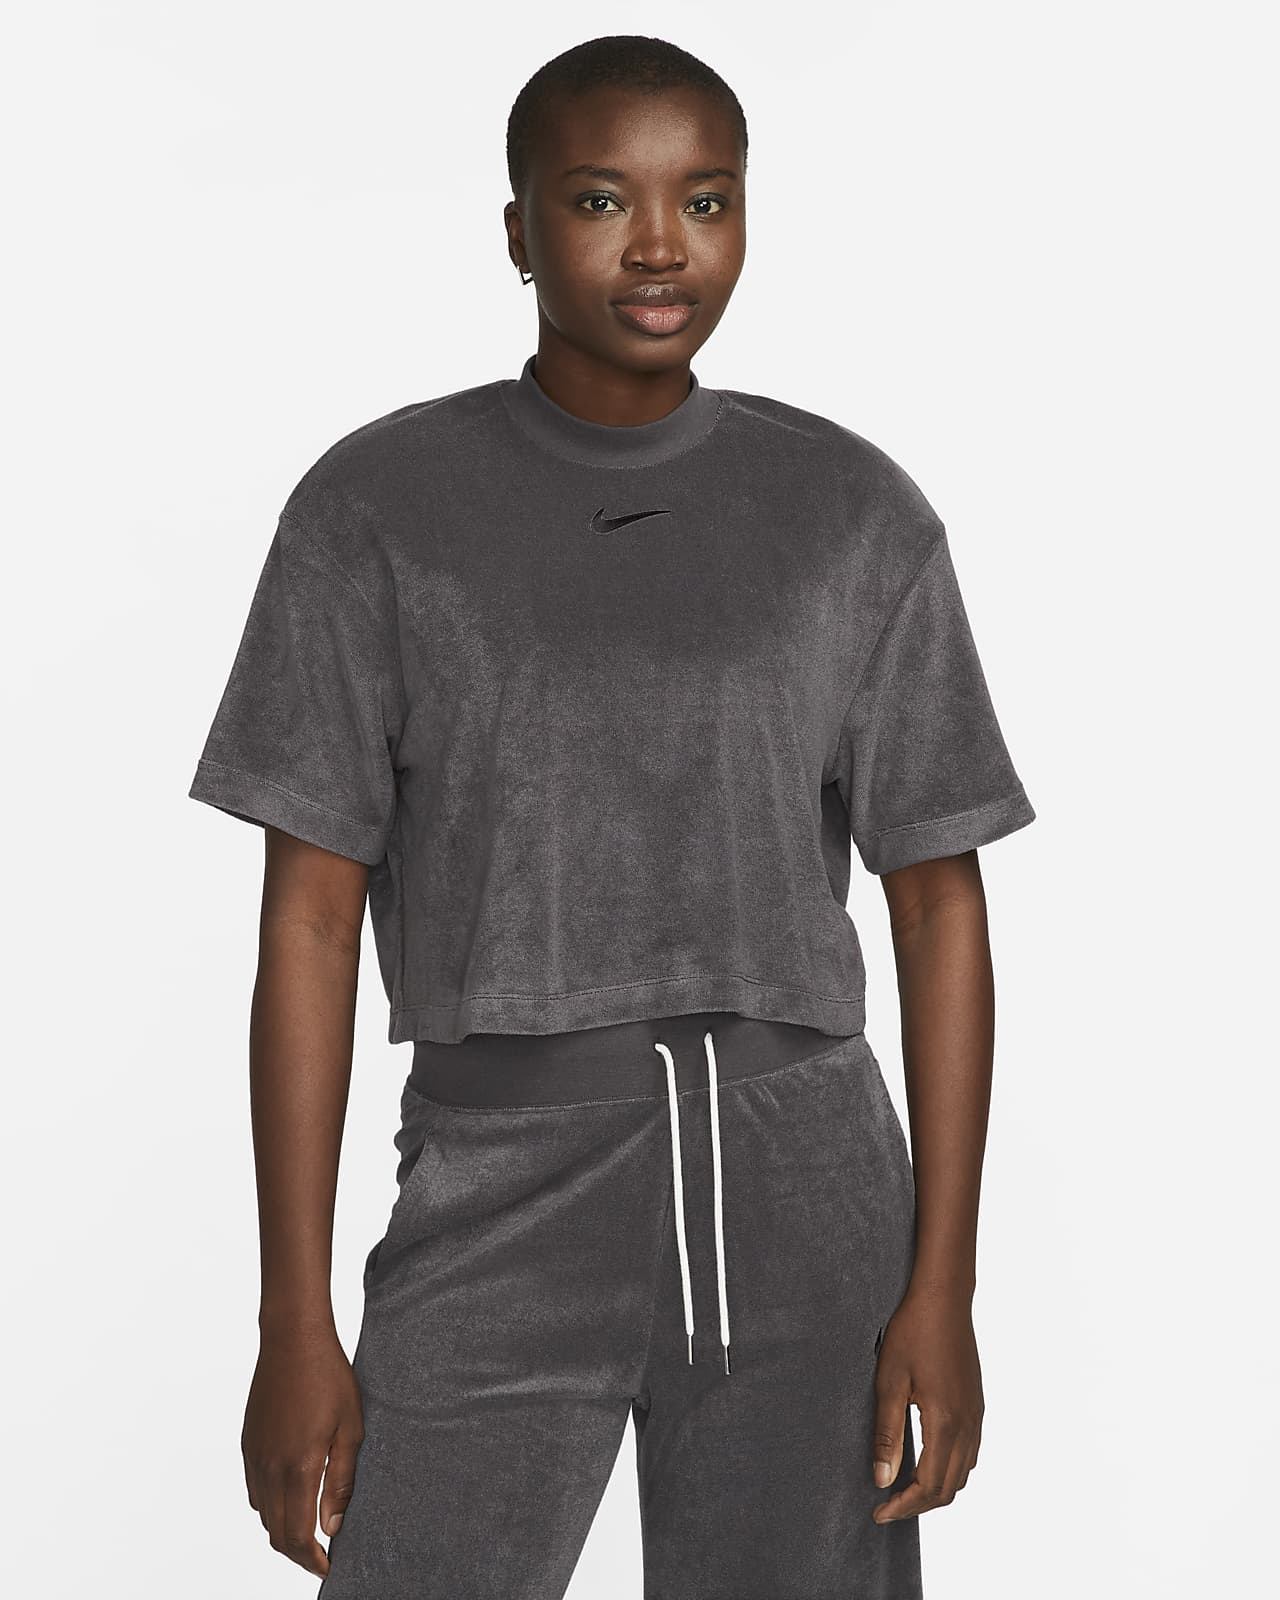 Nike Sportswear Women's Mock-Neck Short-Sleeve Terry Top. Nike.com